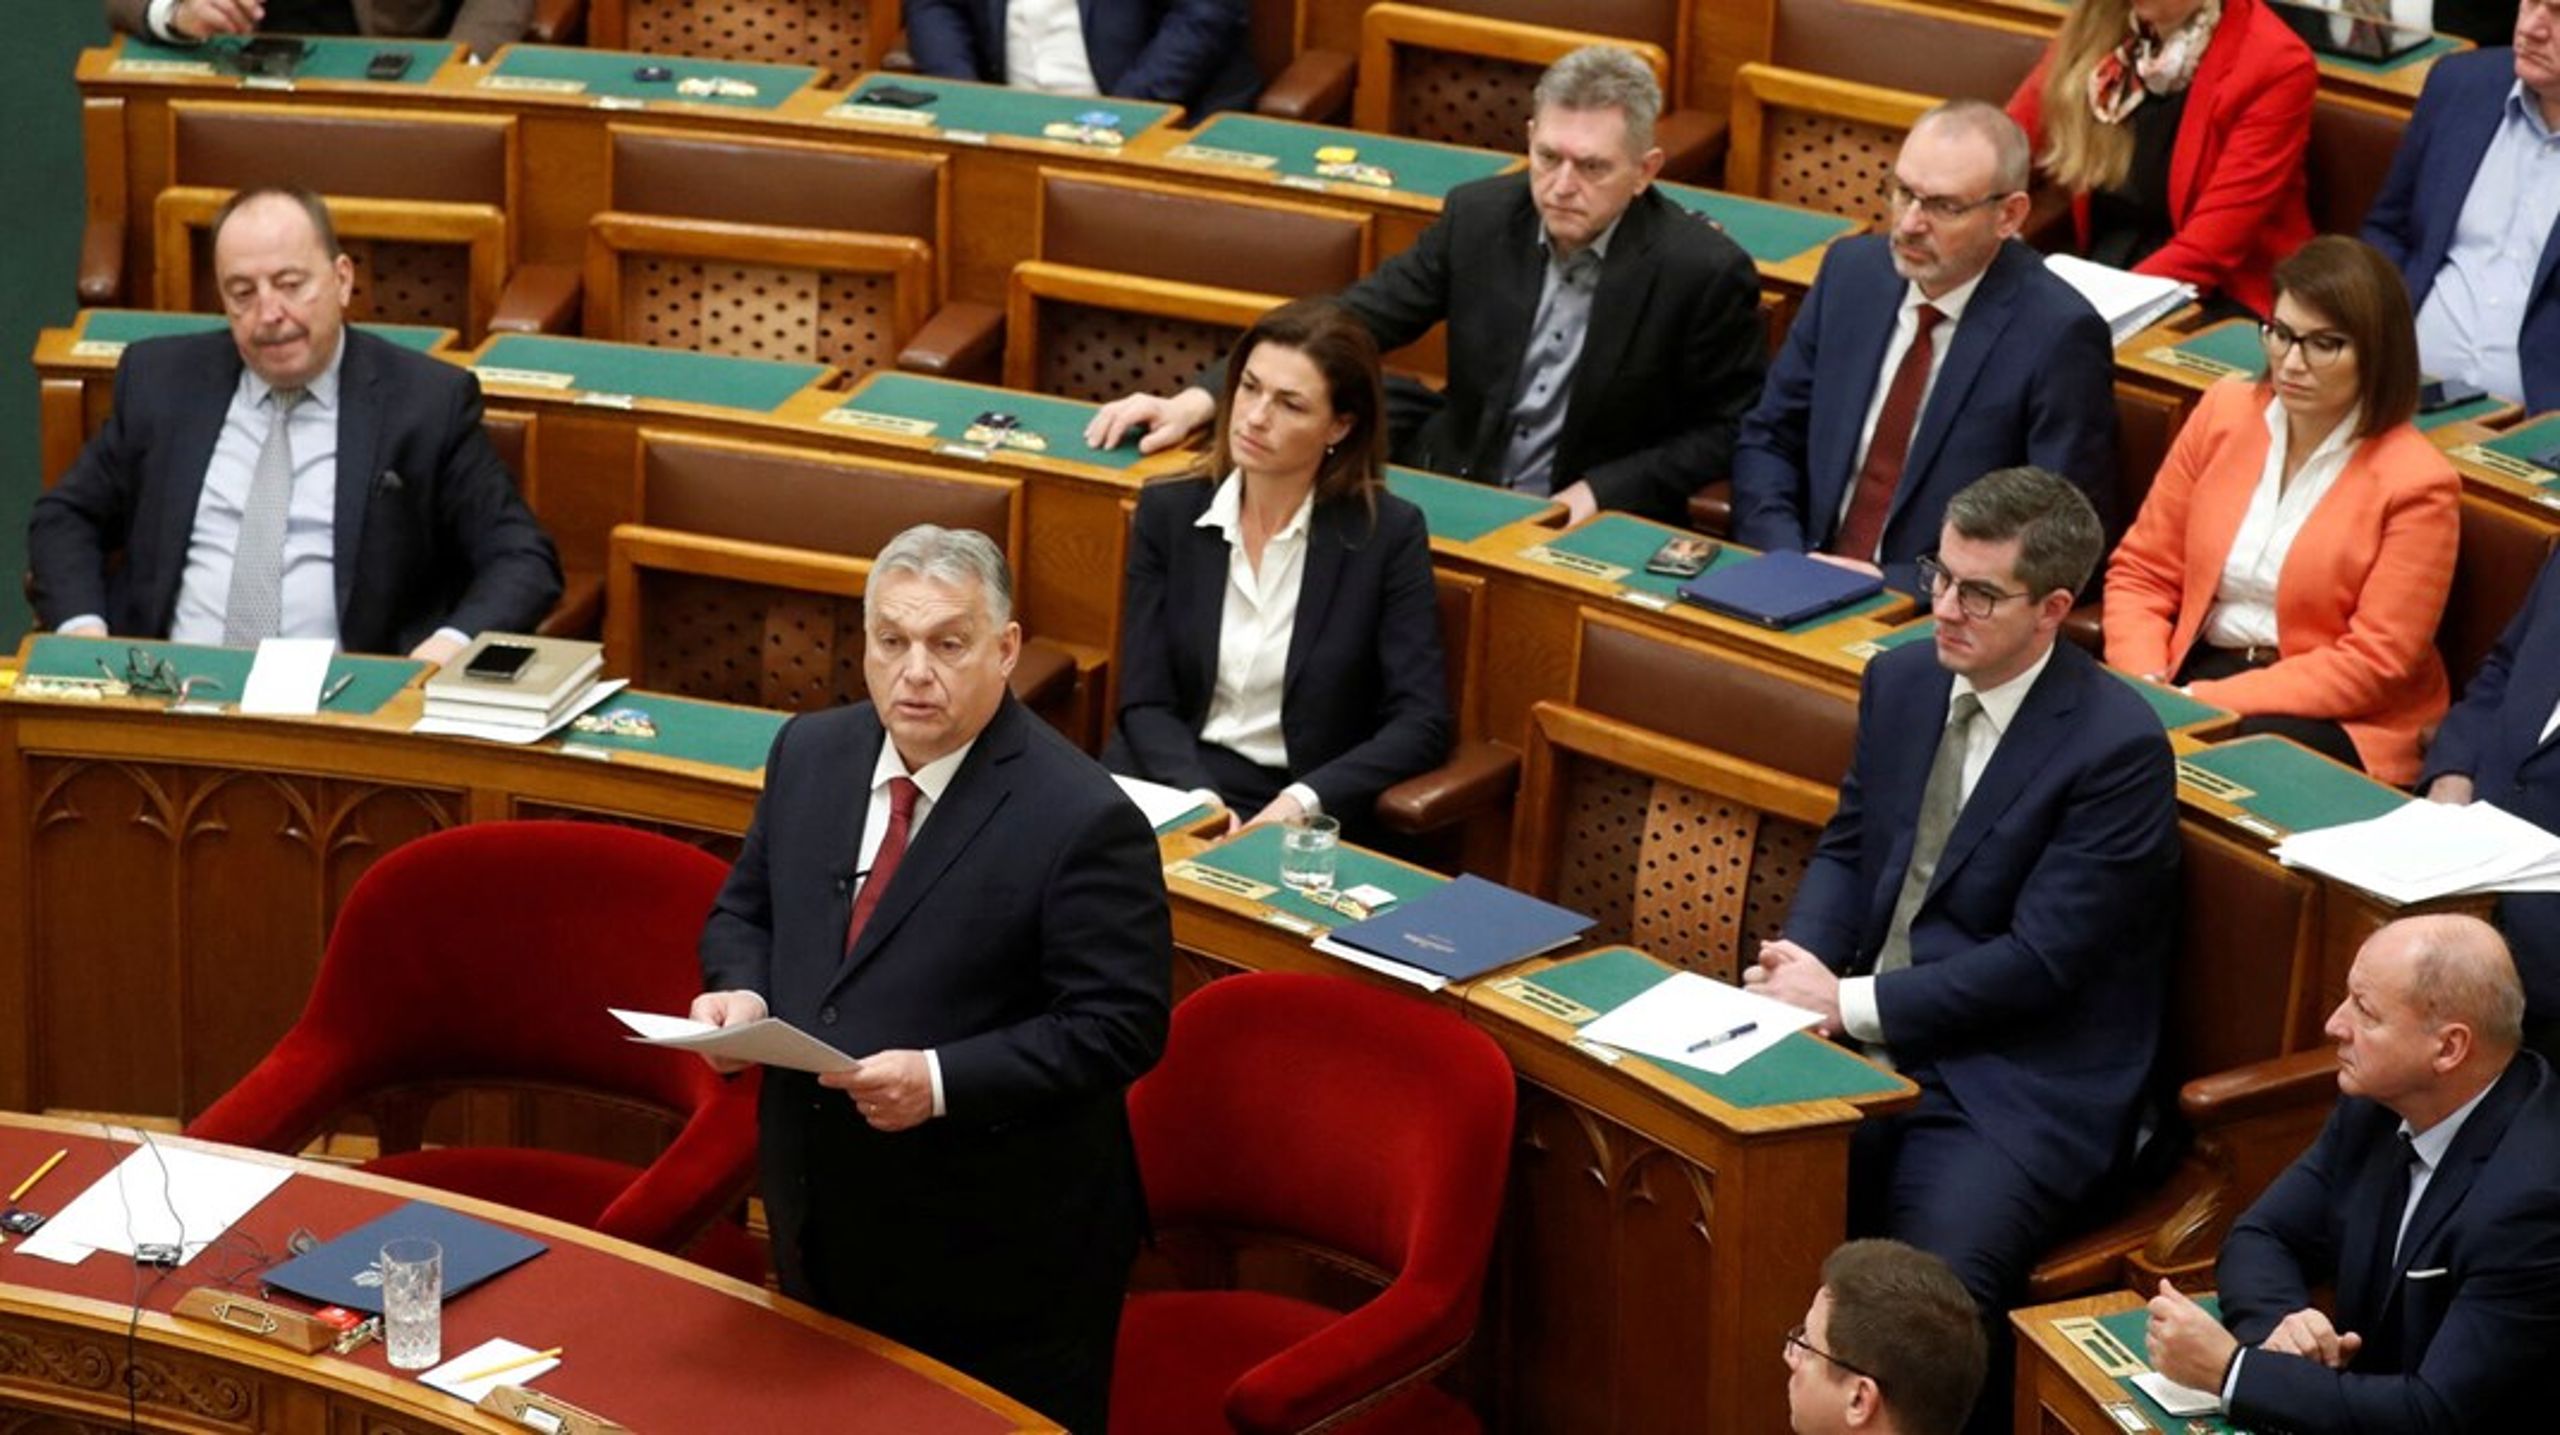 Onsdag lovede premierminister Viktor Orbán i det ungarske parlament, at han vil bremse EU's planer om at åbne optagelsesforhandlinger med Ukraine.